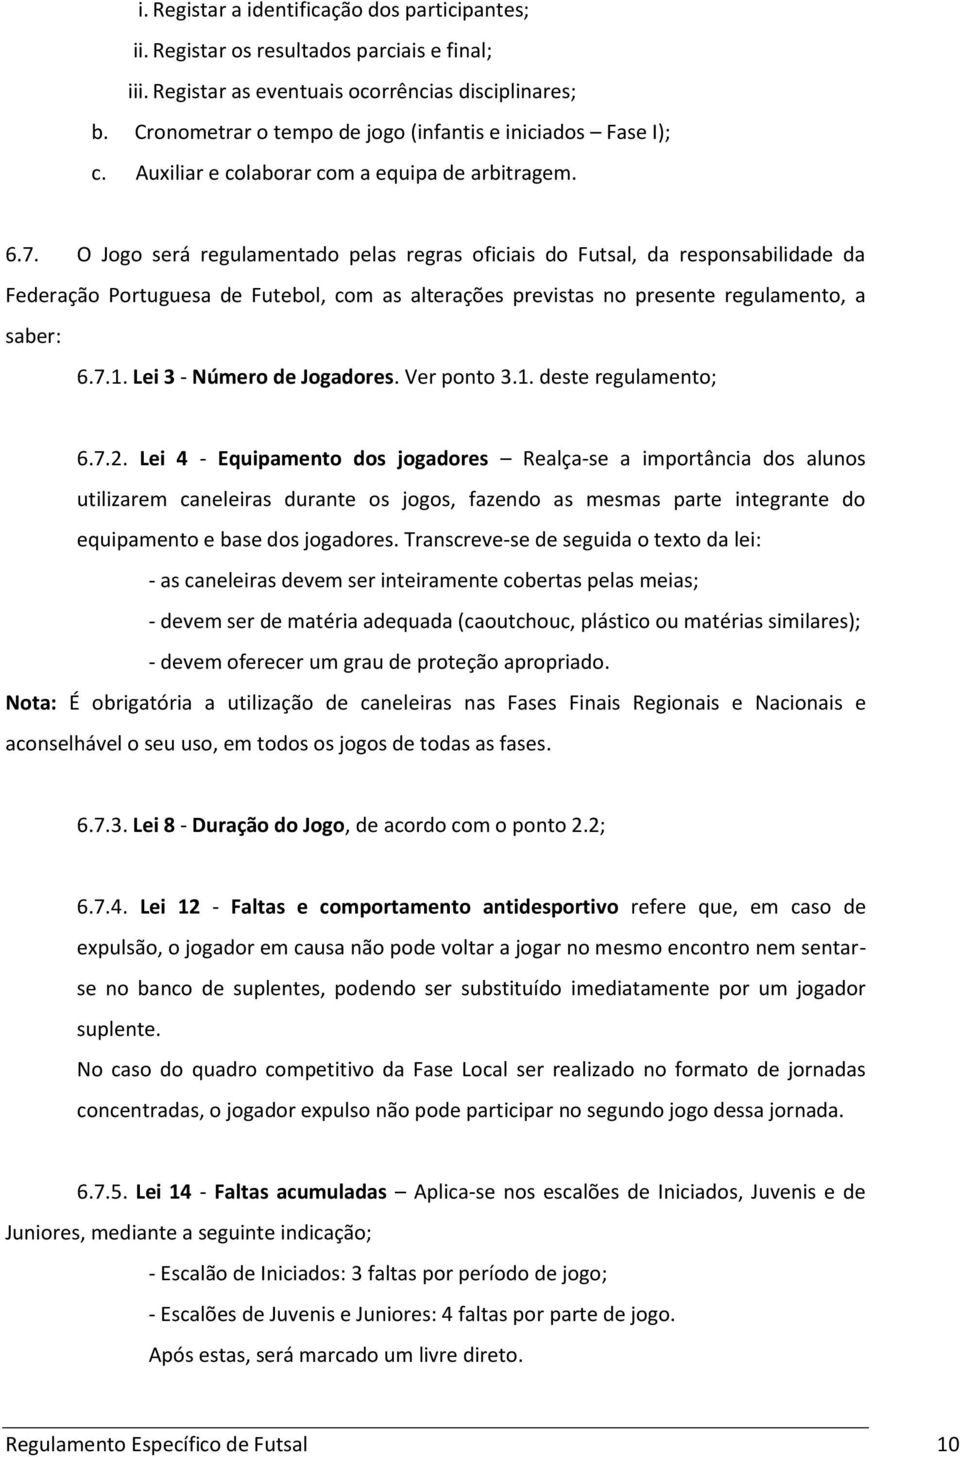 O Jogo será regulamentado pelas regras oficiais do Futsal, da responsabilidade da Federação Portuguesa de Futebol, com as alterações previstas no presente regulamento, a saber: 6.7.1.